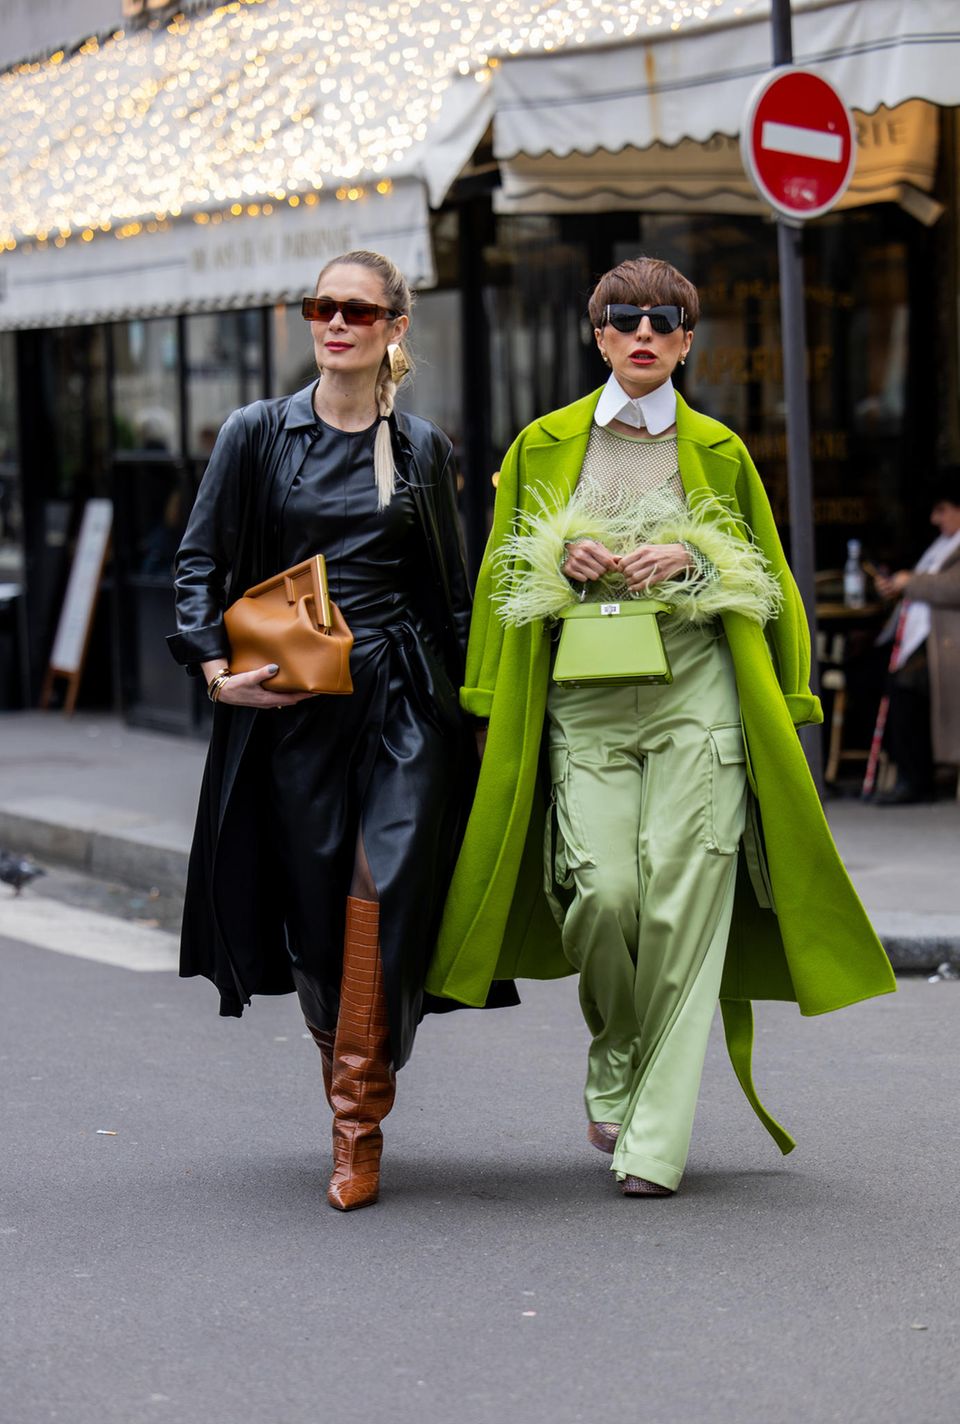 Die Haute Couture Fashion Week in Paris sorgt für absolute Mode-Highlights, und das nicht nur auf dem Runway. Wie stylisch die Besucher:innen auf den Straßen unterwegs waren, zeigen uns unter anderem Iryna Thater und Salome Chaboki.